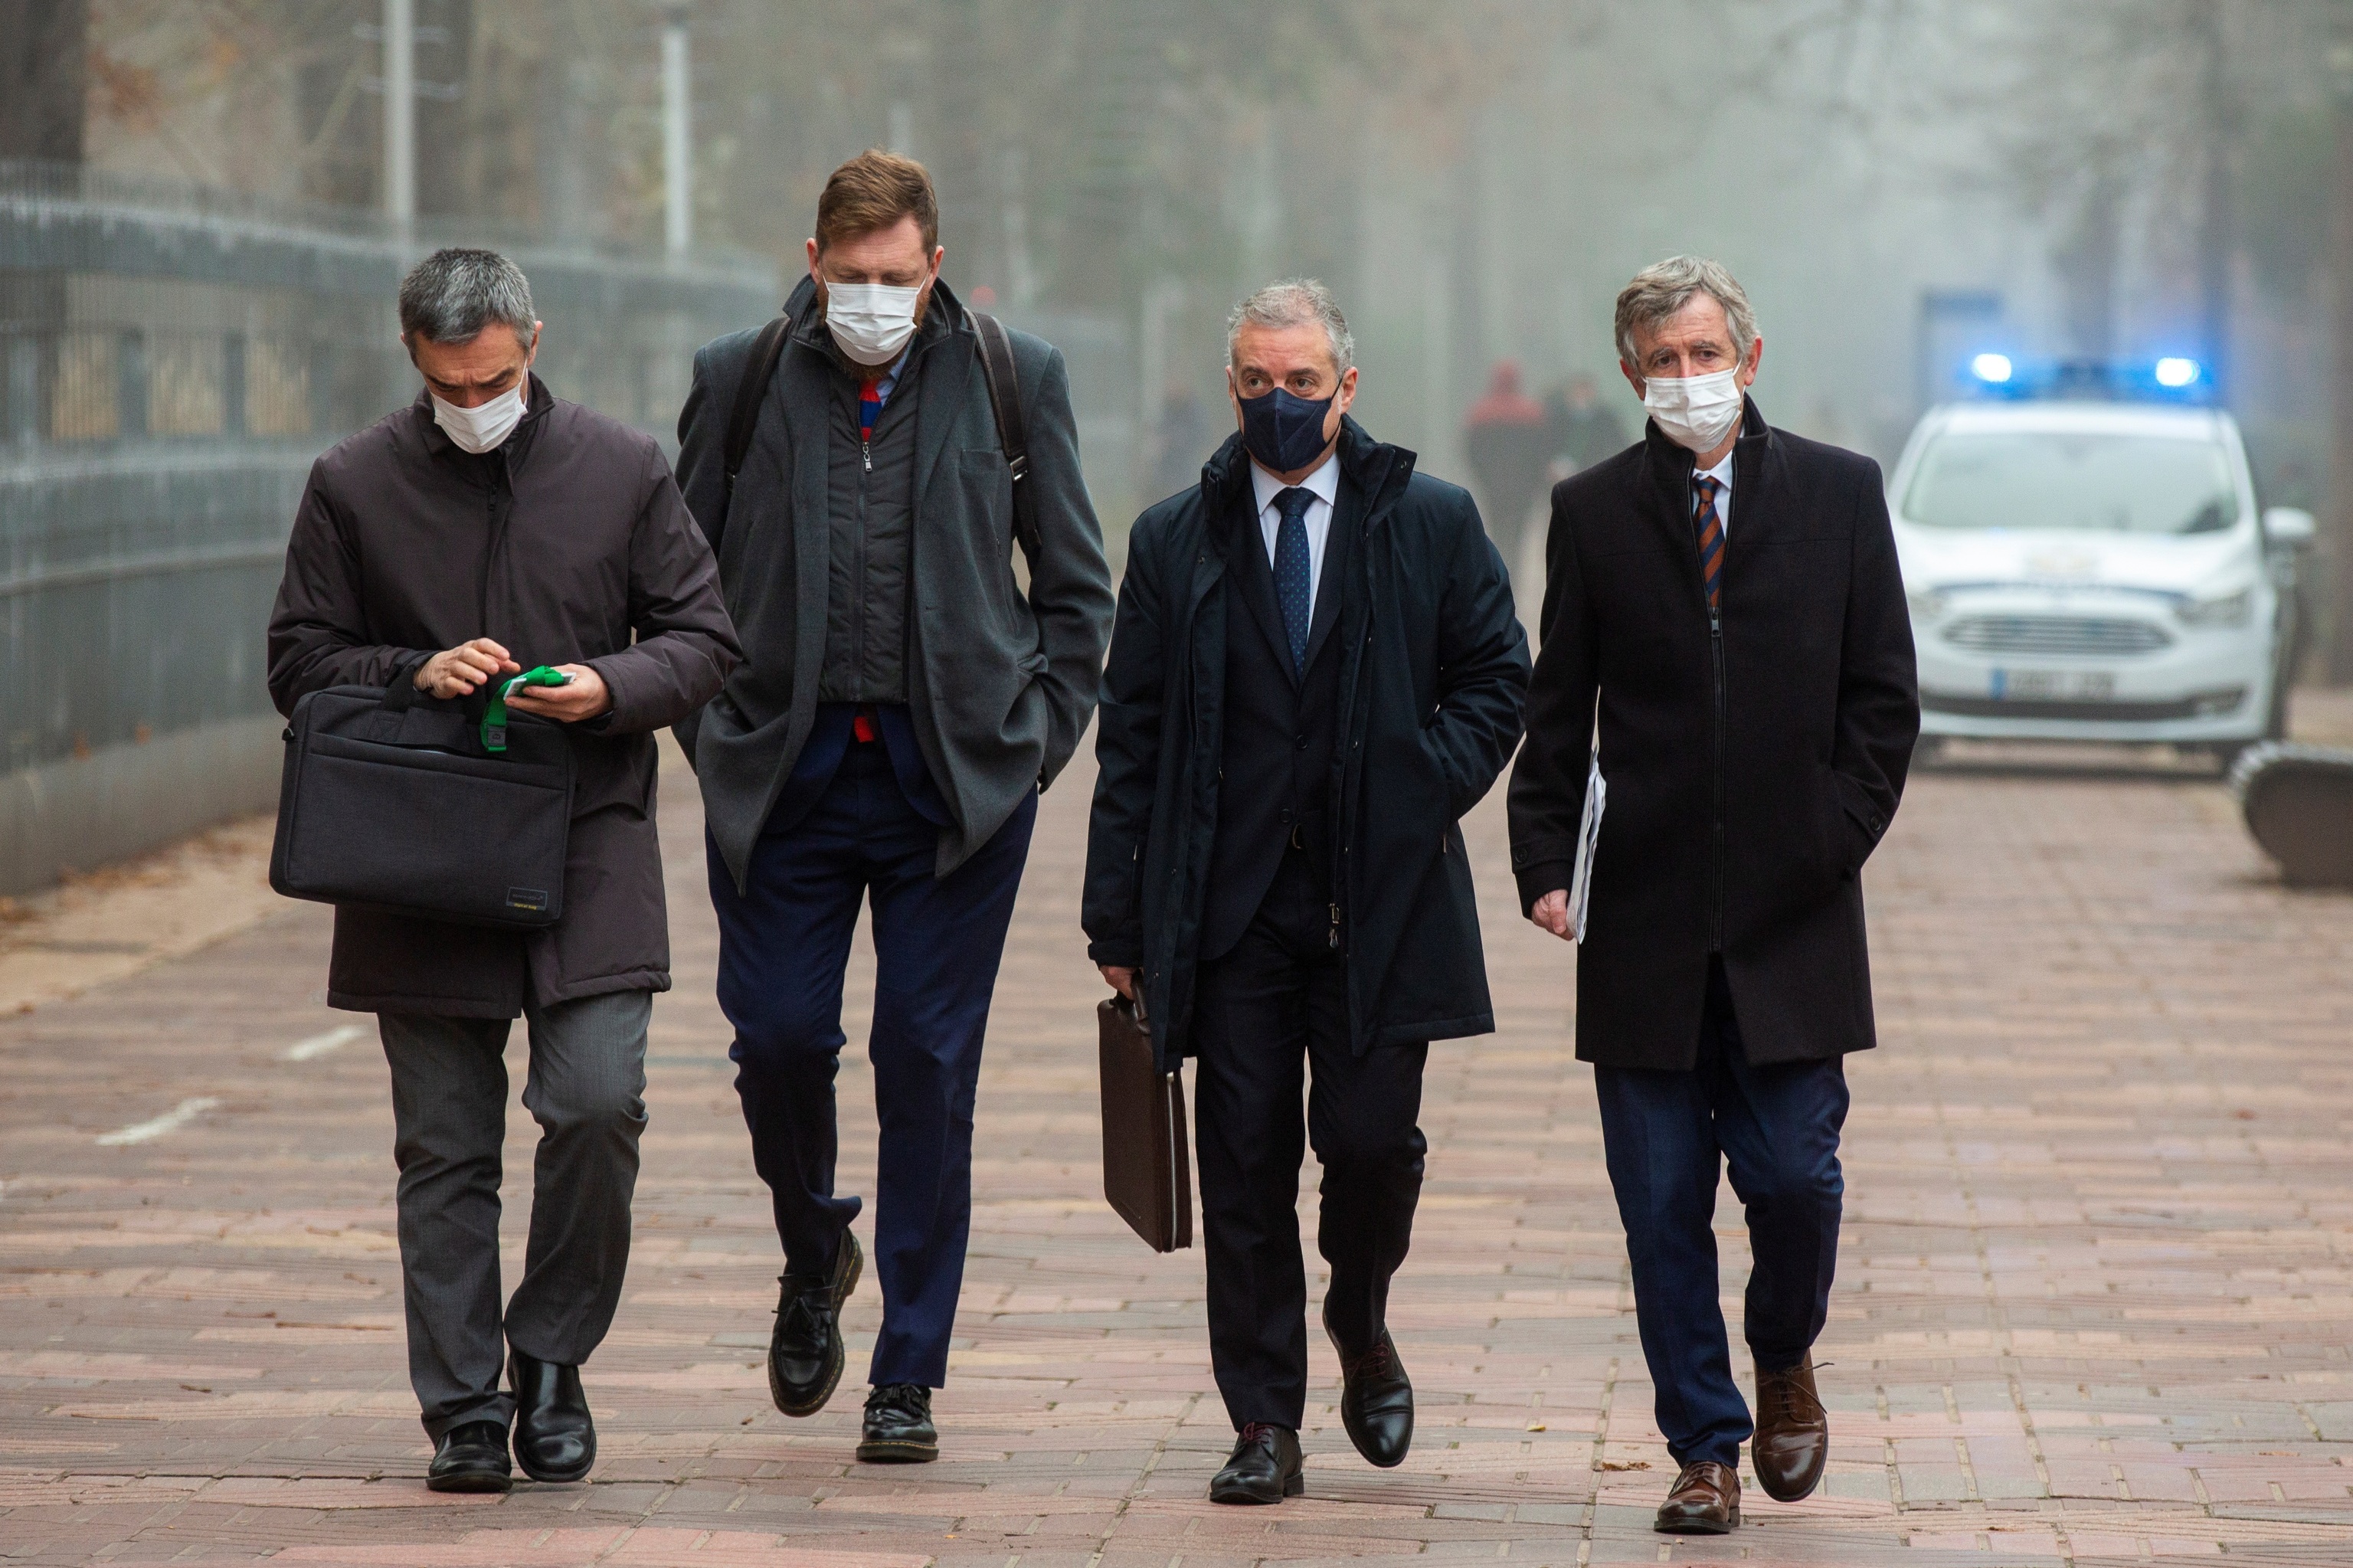 El lehendakari Urkullu con sus asesores camina hacia el Parlamento Vasco en medio de la niebla de Vitoria.